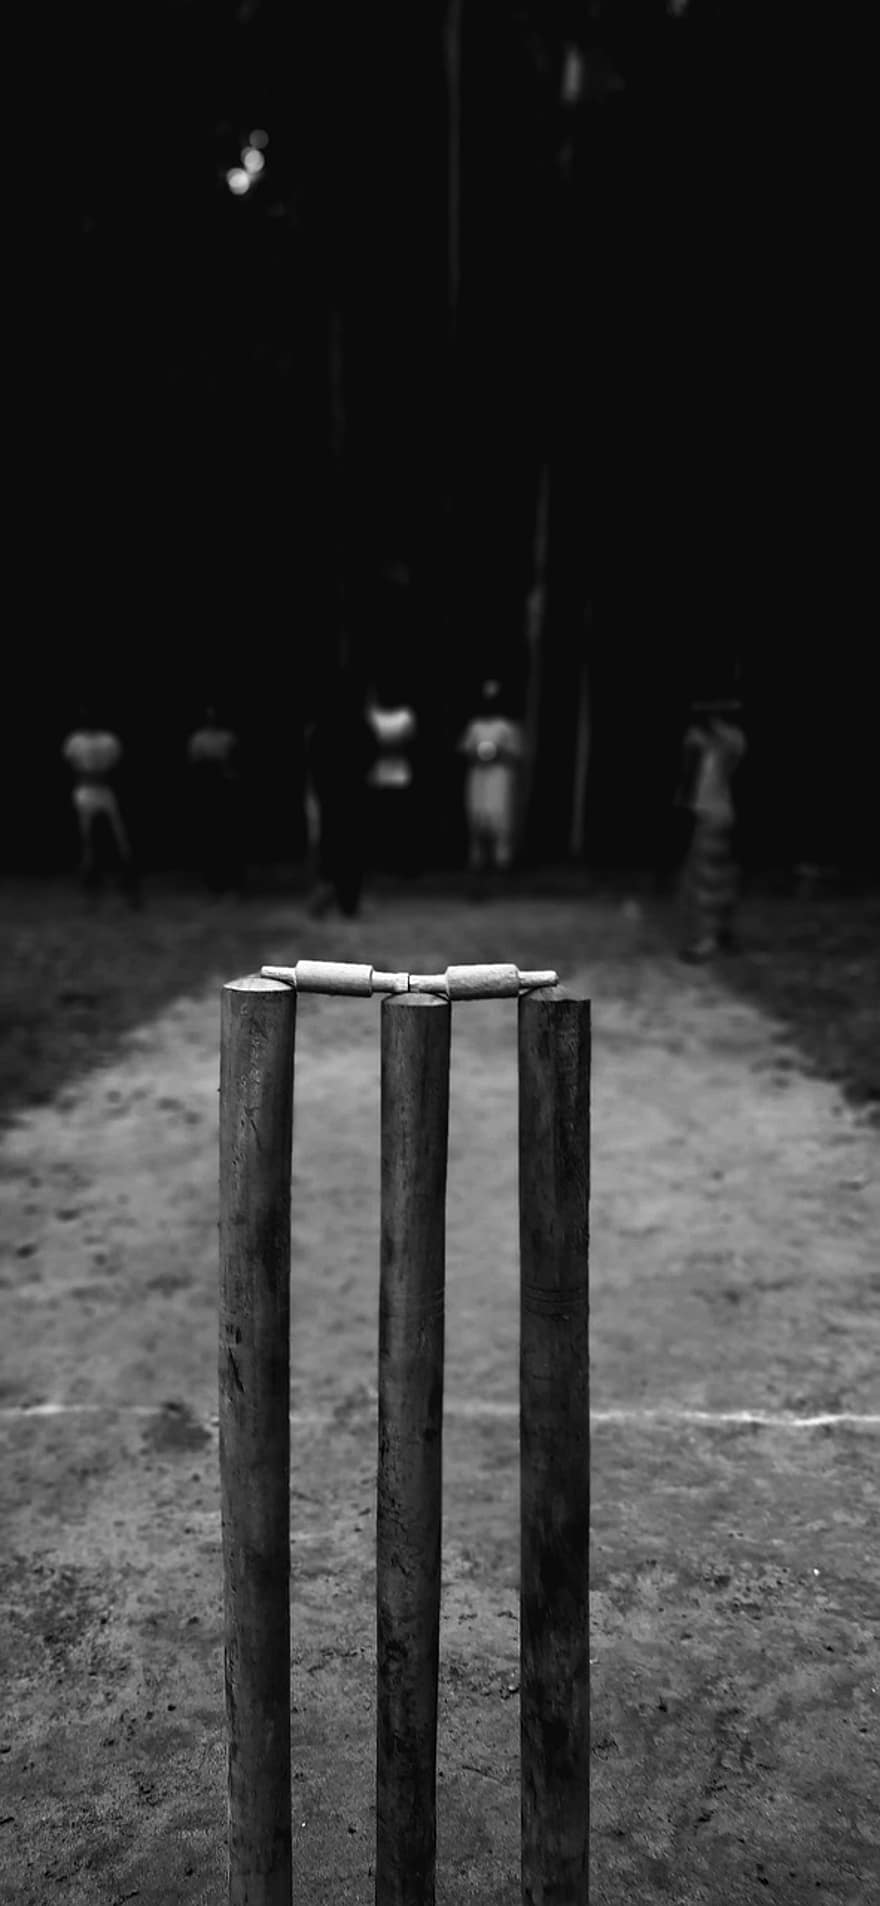 क्रिकेट, खेल, बचपन, काला और सफेद, ख़ुशी, विषाद, सड़क पर, खेल का मैदान